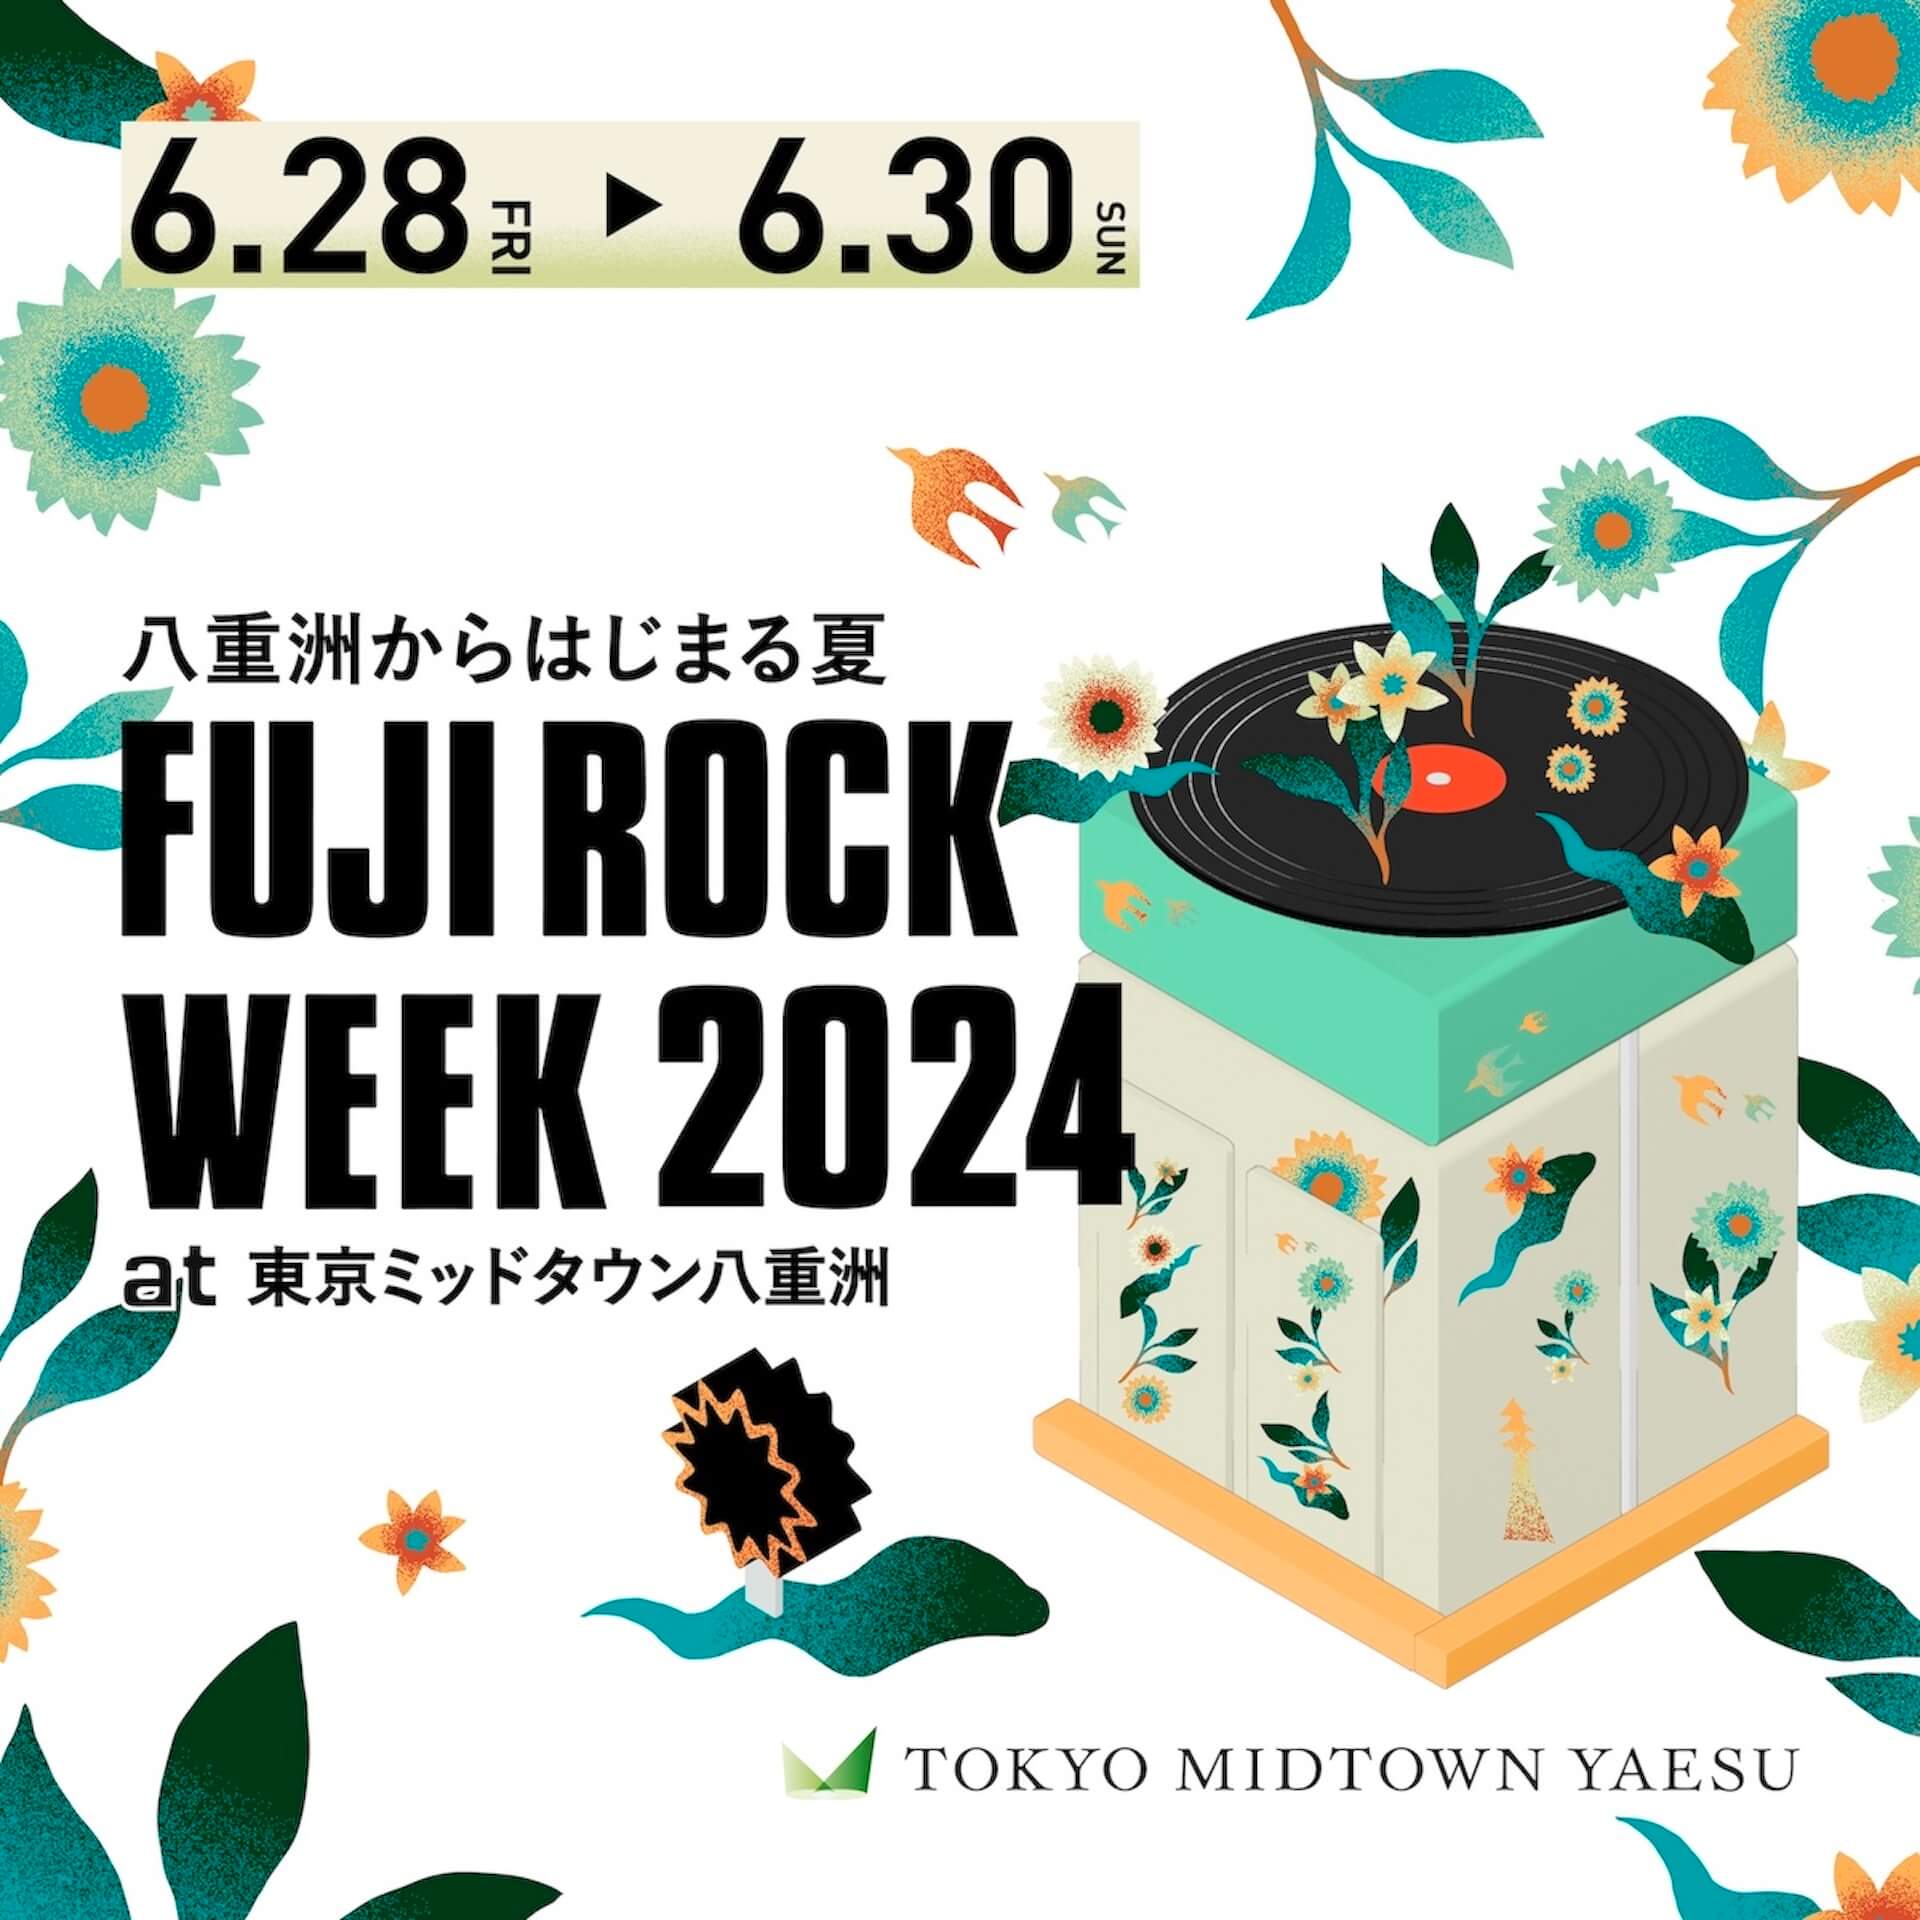 FUJI ROCK WEEK 2024 at 東京ミッドタウン八重洲